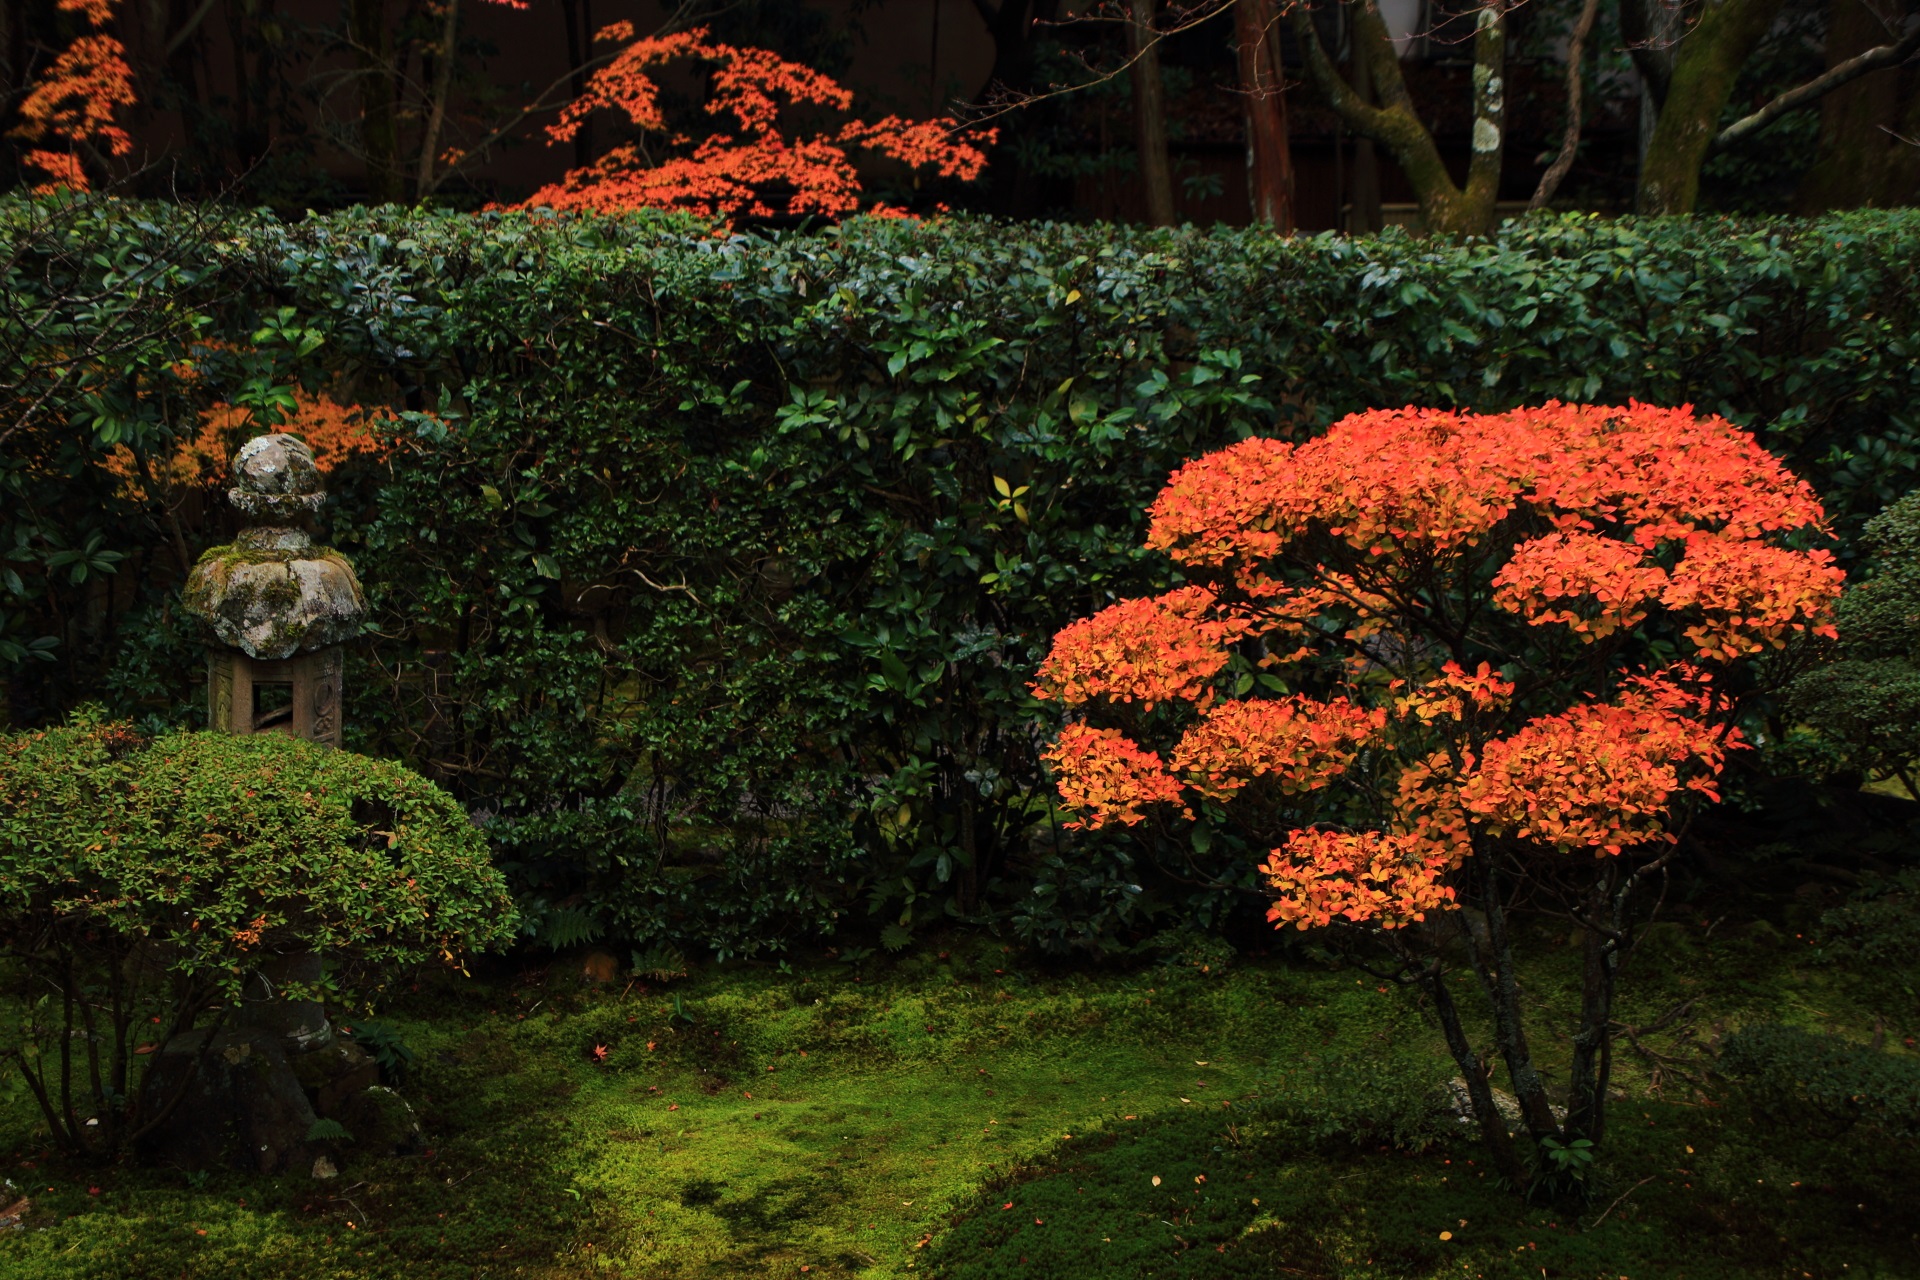 桂春院の緑の苔や生垣に映える華やかなツツジの紅葉